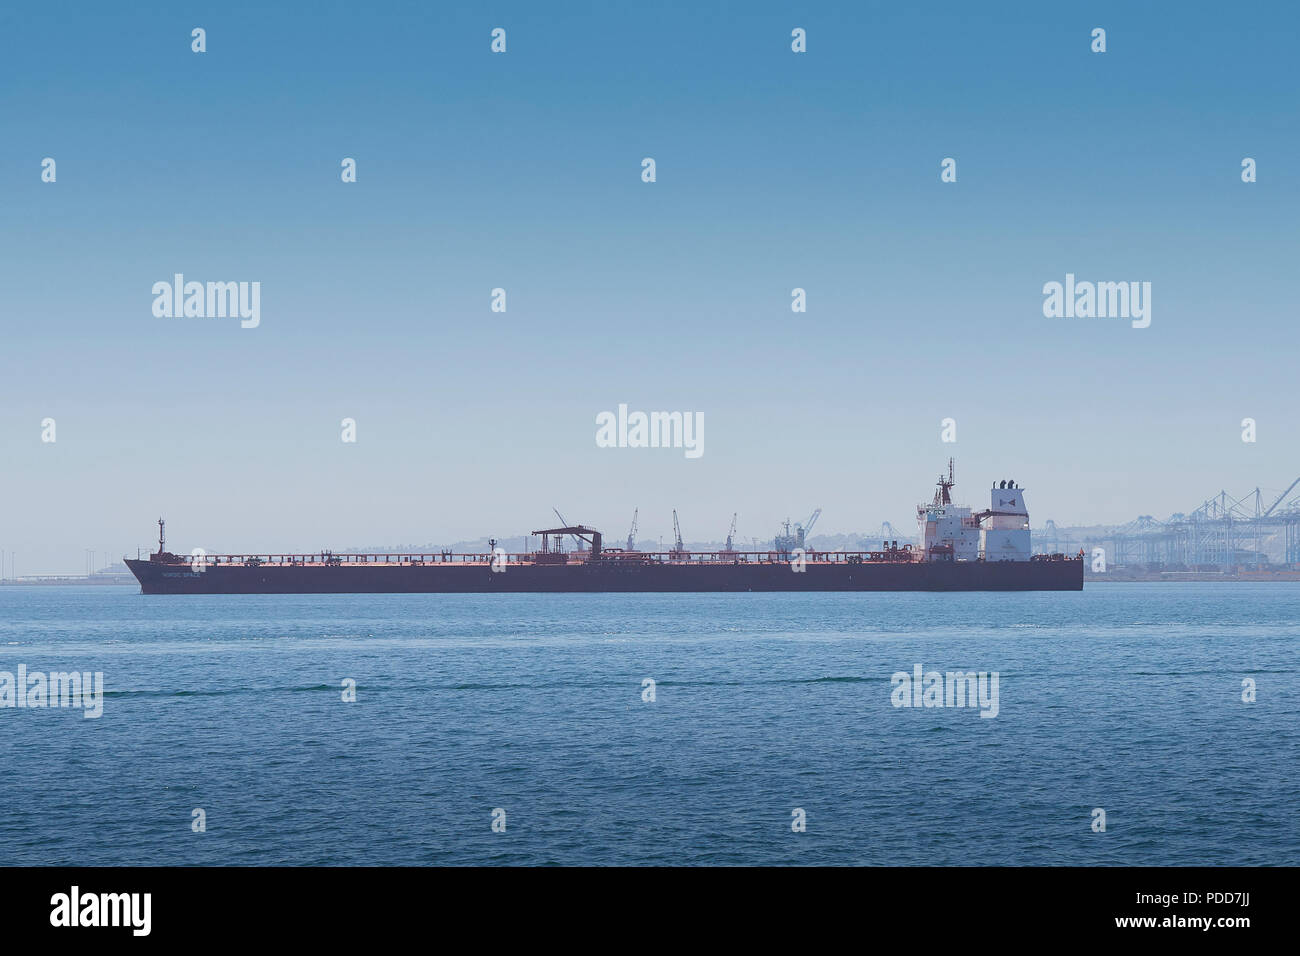 Giant superpetroliera (Grezzo Petroliera), lo Spazio nordico, al di ancoraggio nel porto di Long Beach, California, Stati Uniti d'America. Foto Stock